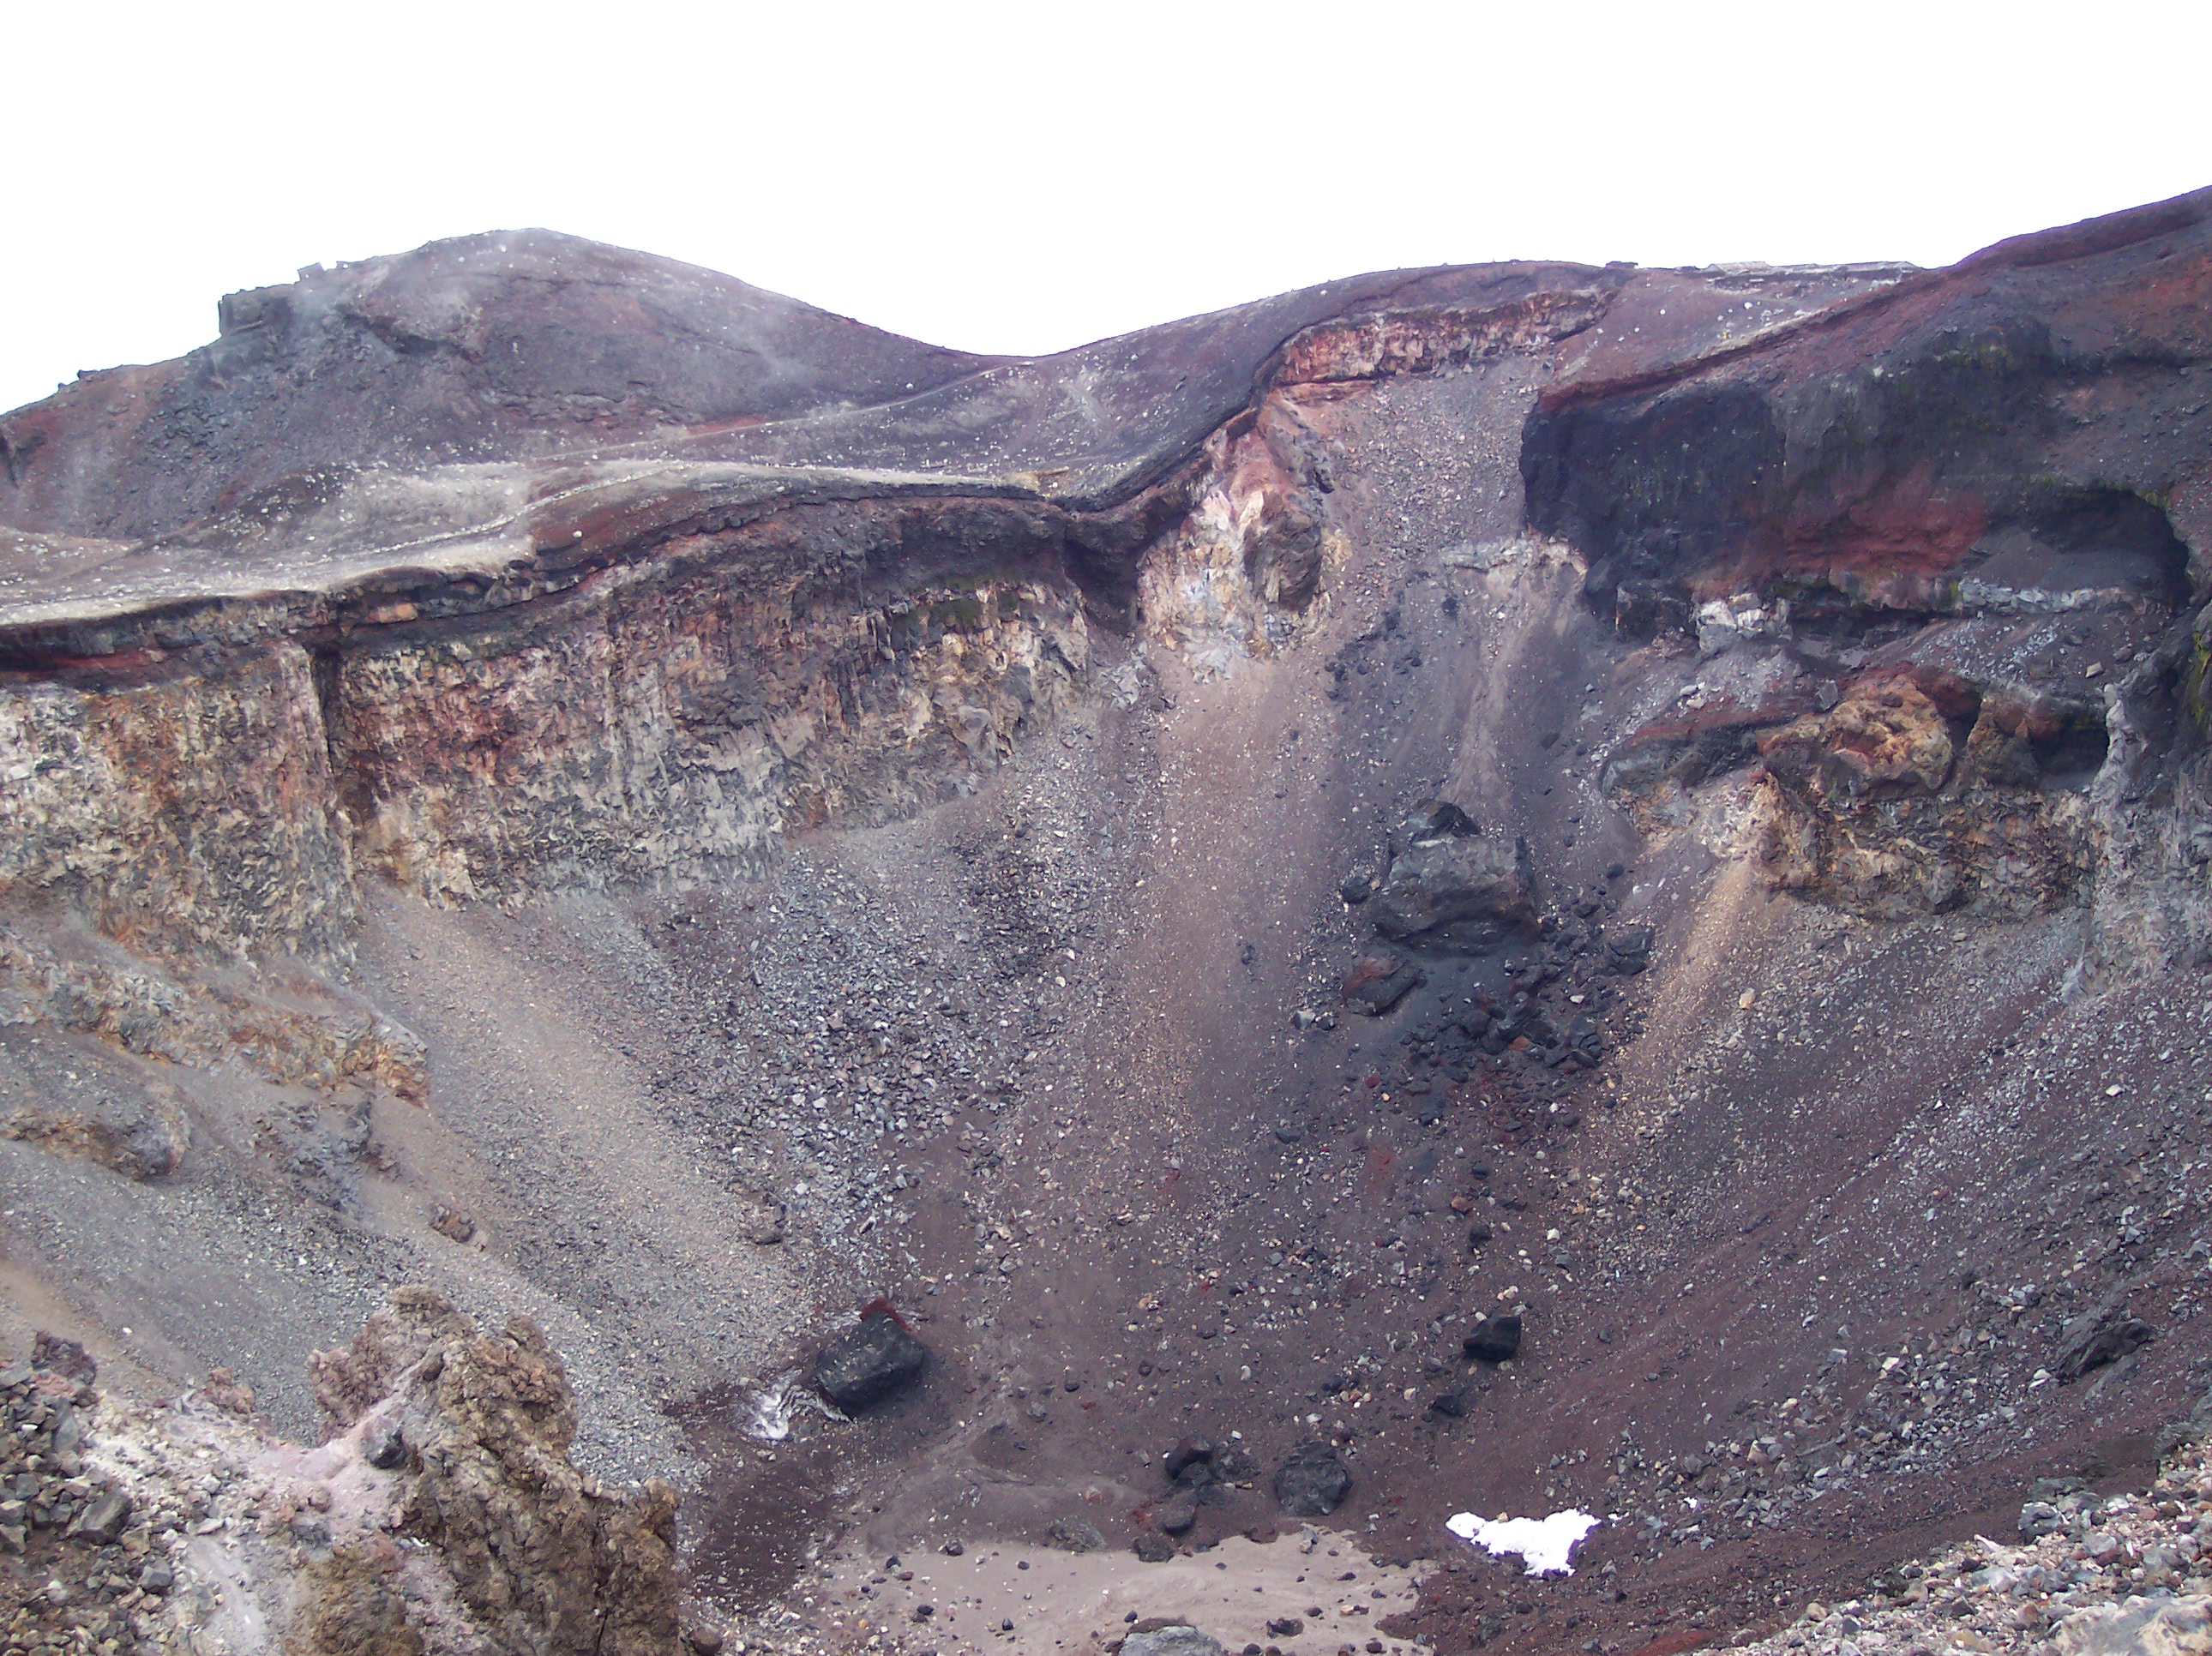 Une vue de l'intérieur du cratère principal du mont Fuji. C'est un stratovolcan toujours considéré comme actif puisque sa dernière éruption date de 1707. © Wikipédia-Nicky Pallas de Mamaroneck